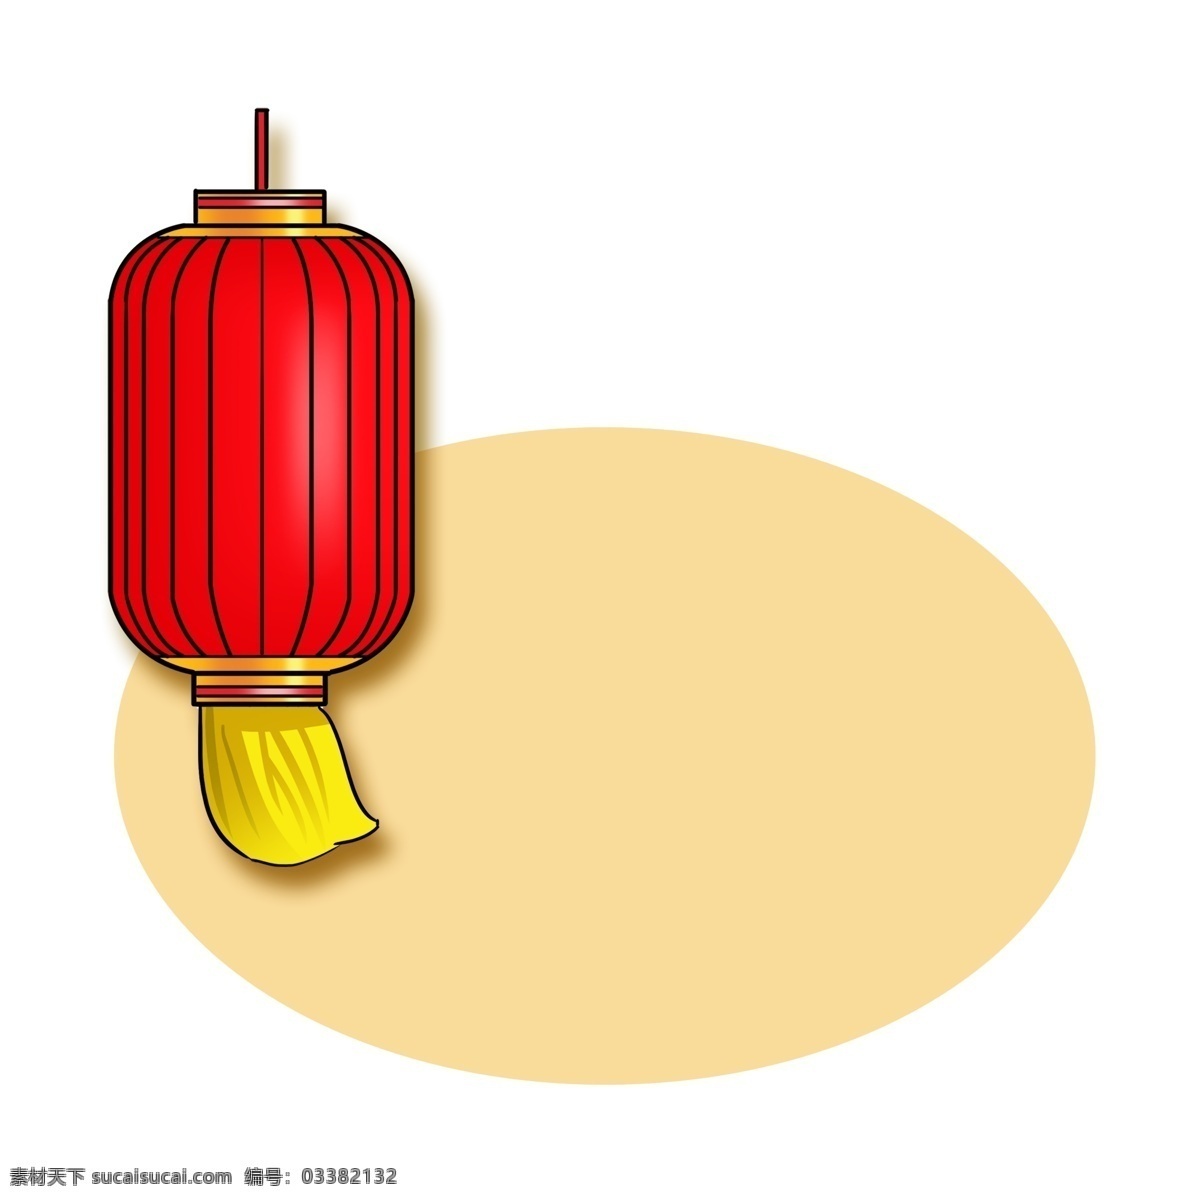 元旦 灯笼 边框 插画 红色的灯笼 黄色的边框 椭圆边框 漂亮的边框 手绘 黄色 吊 穗